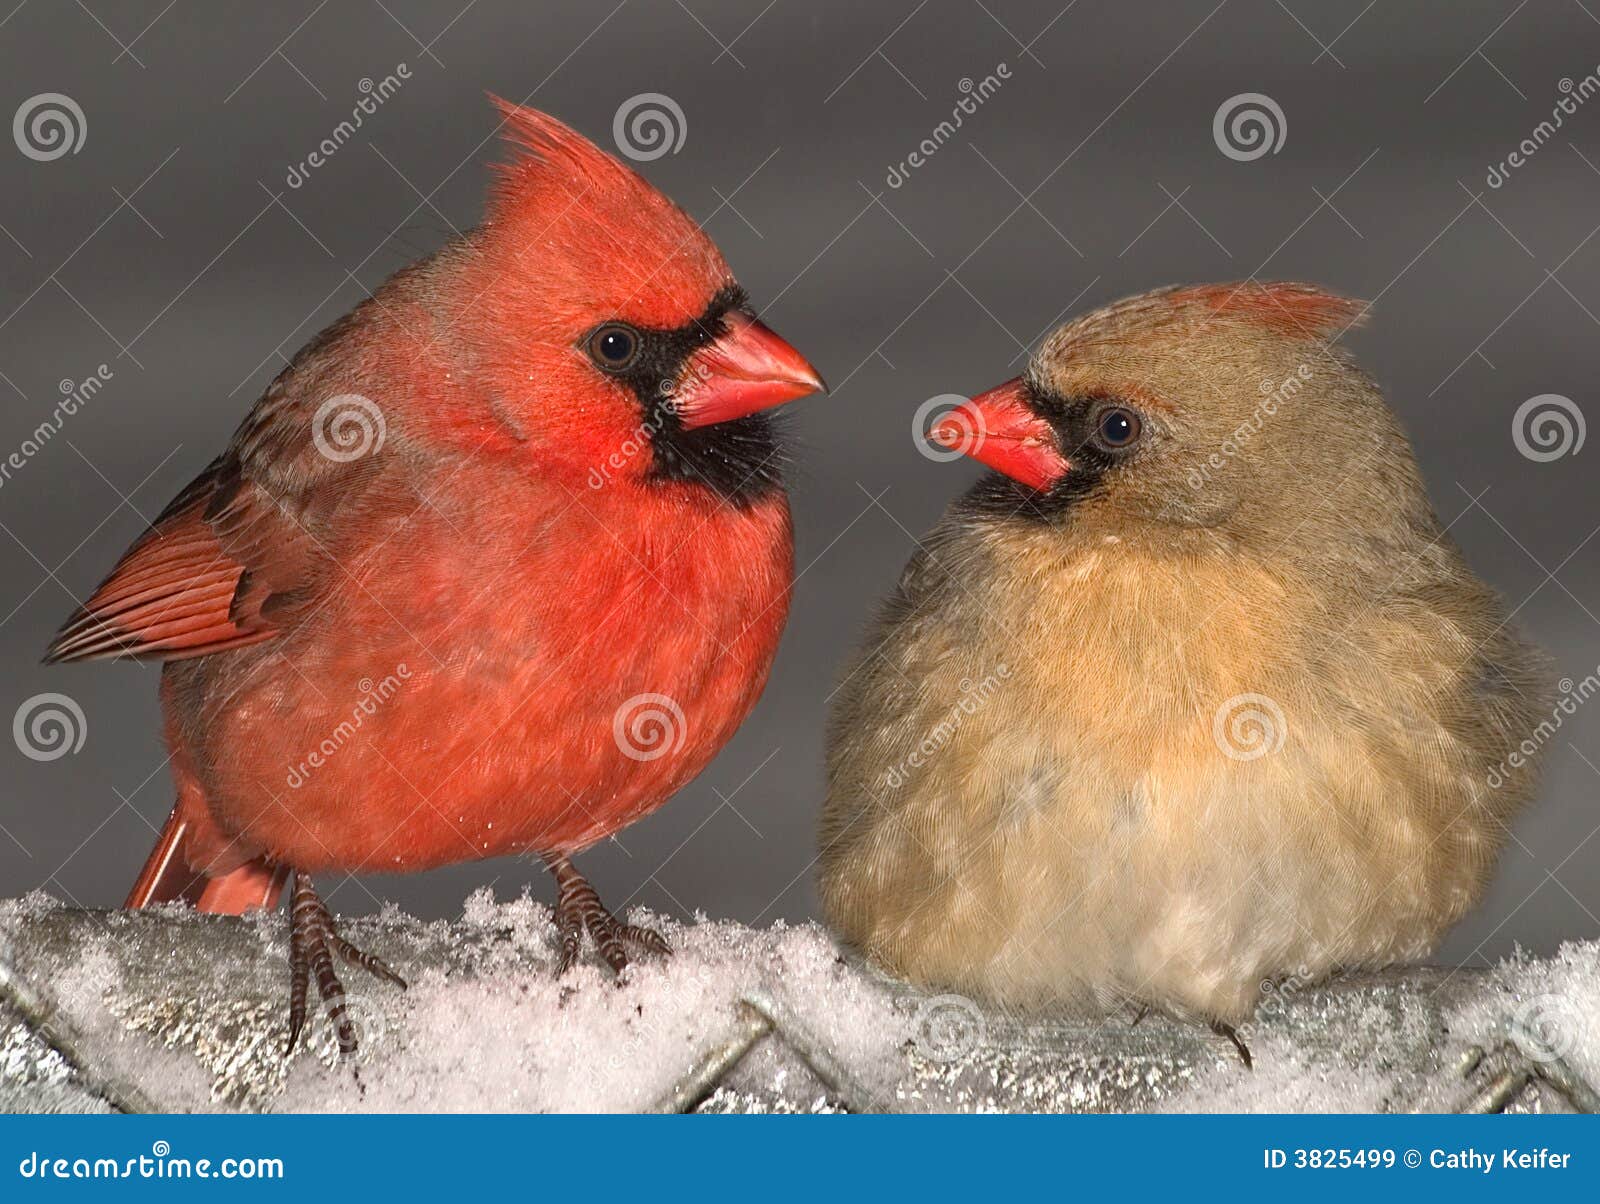 cardinal love